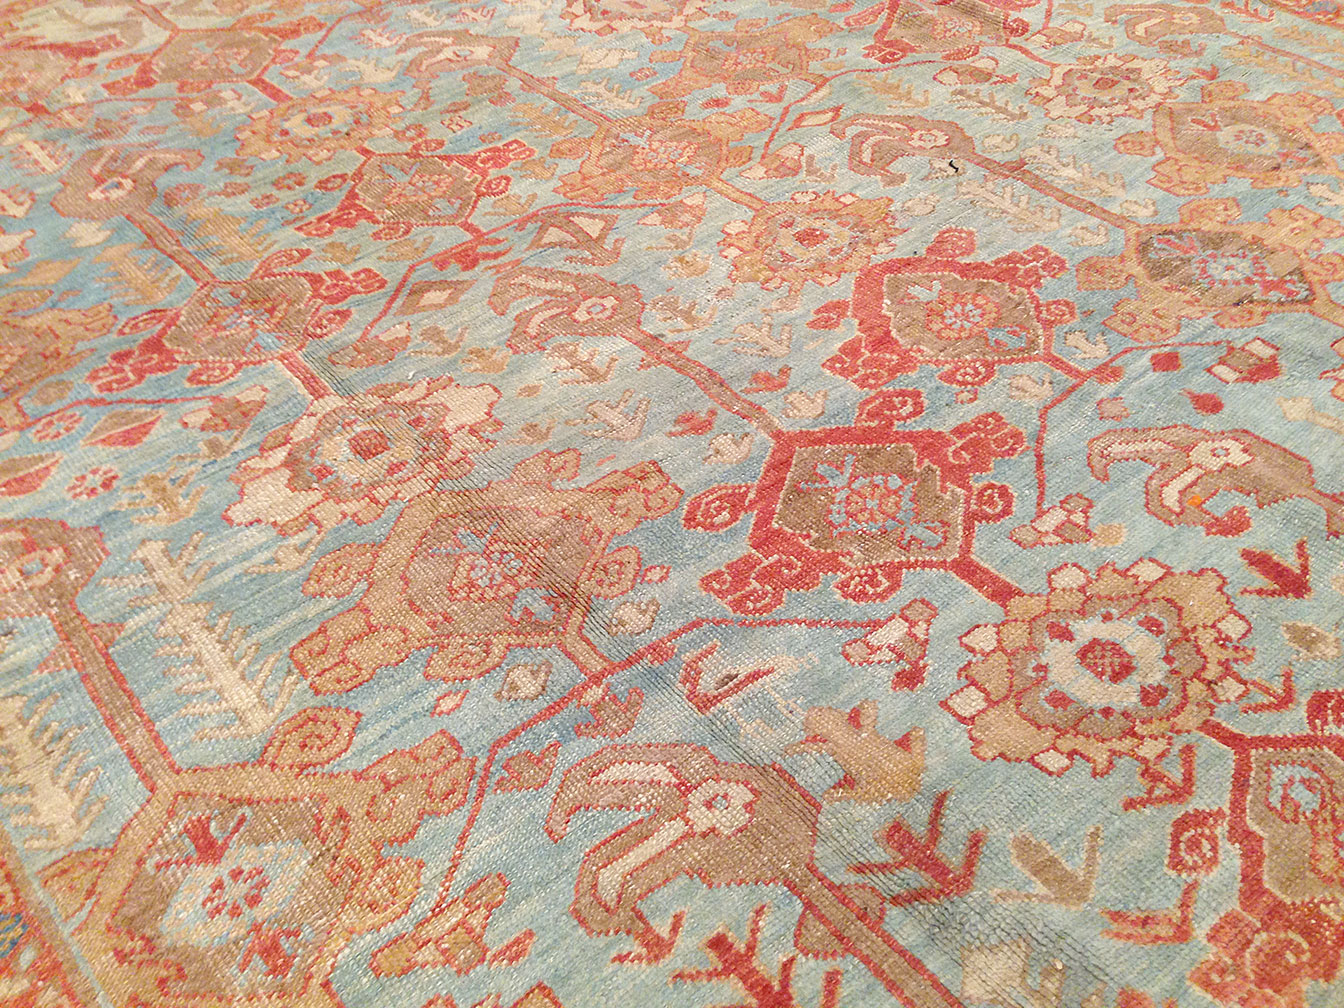 Antique bakshaish Carpet - # 50267